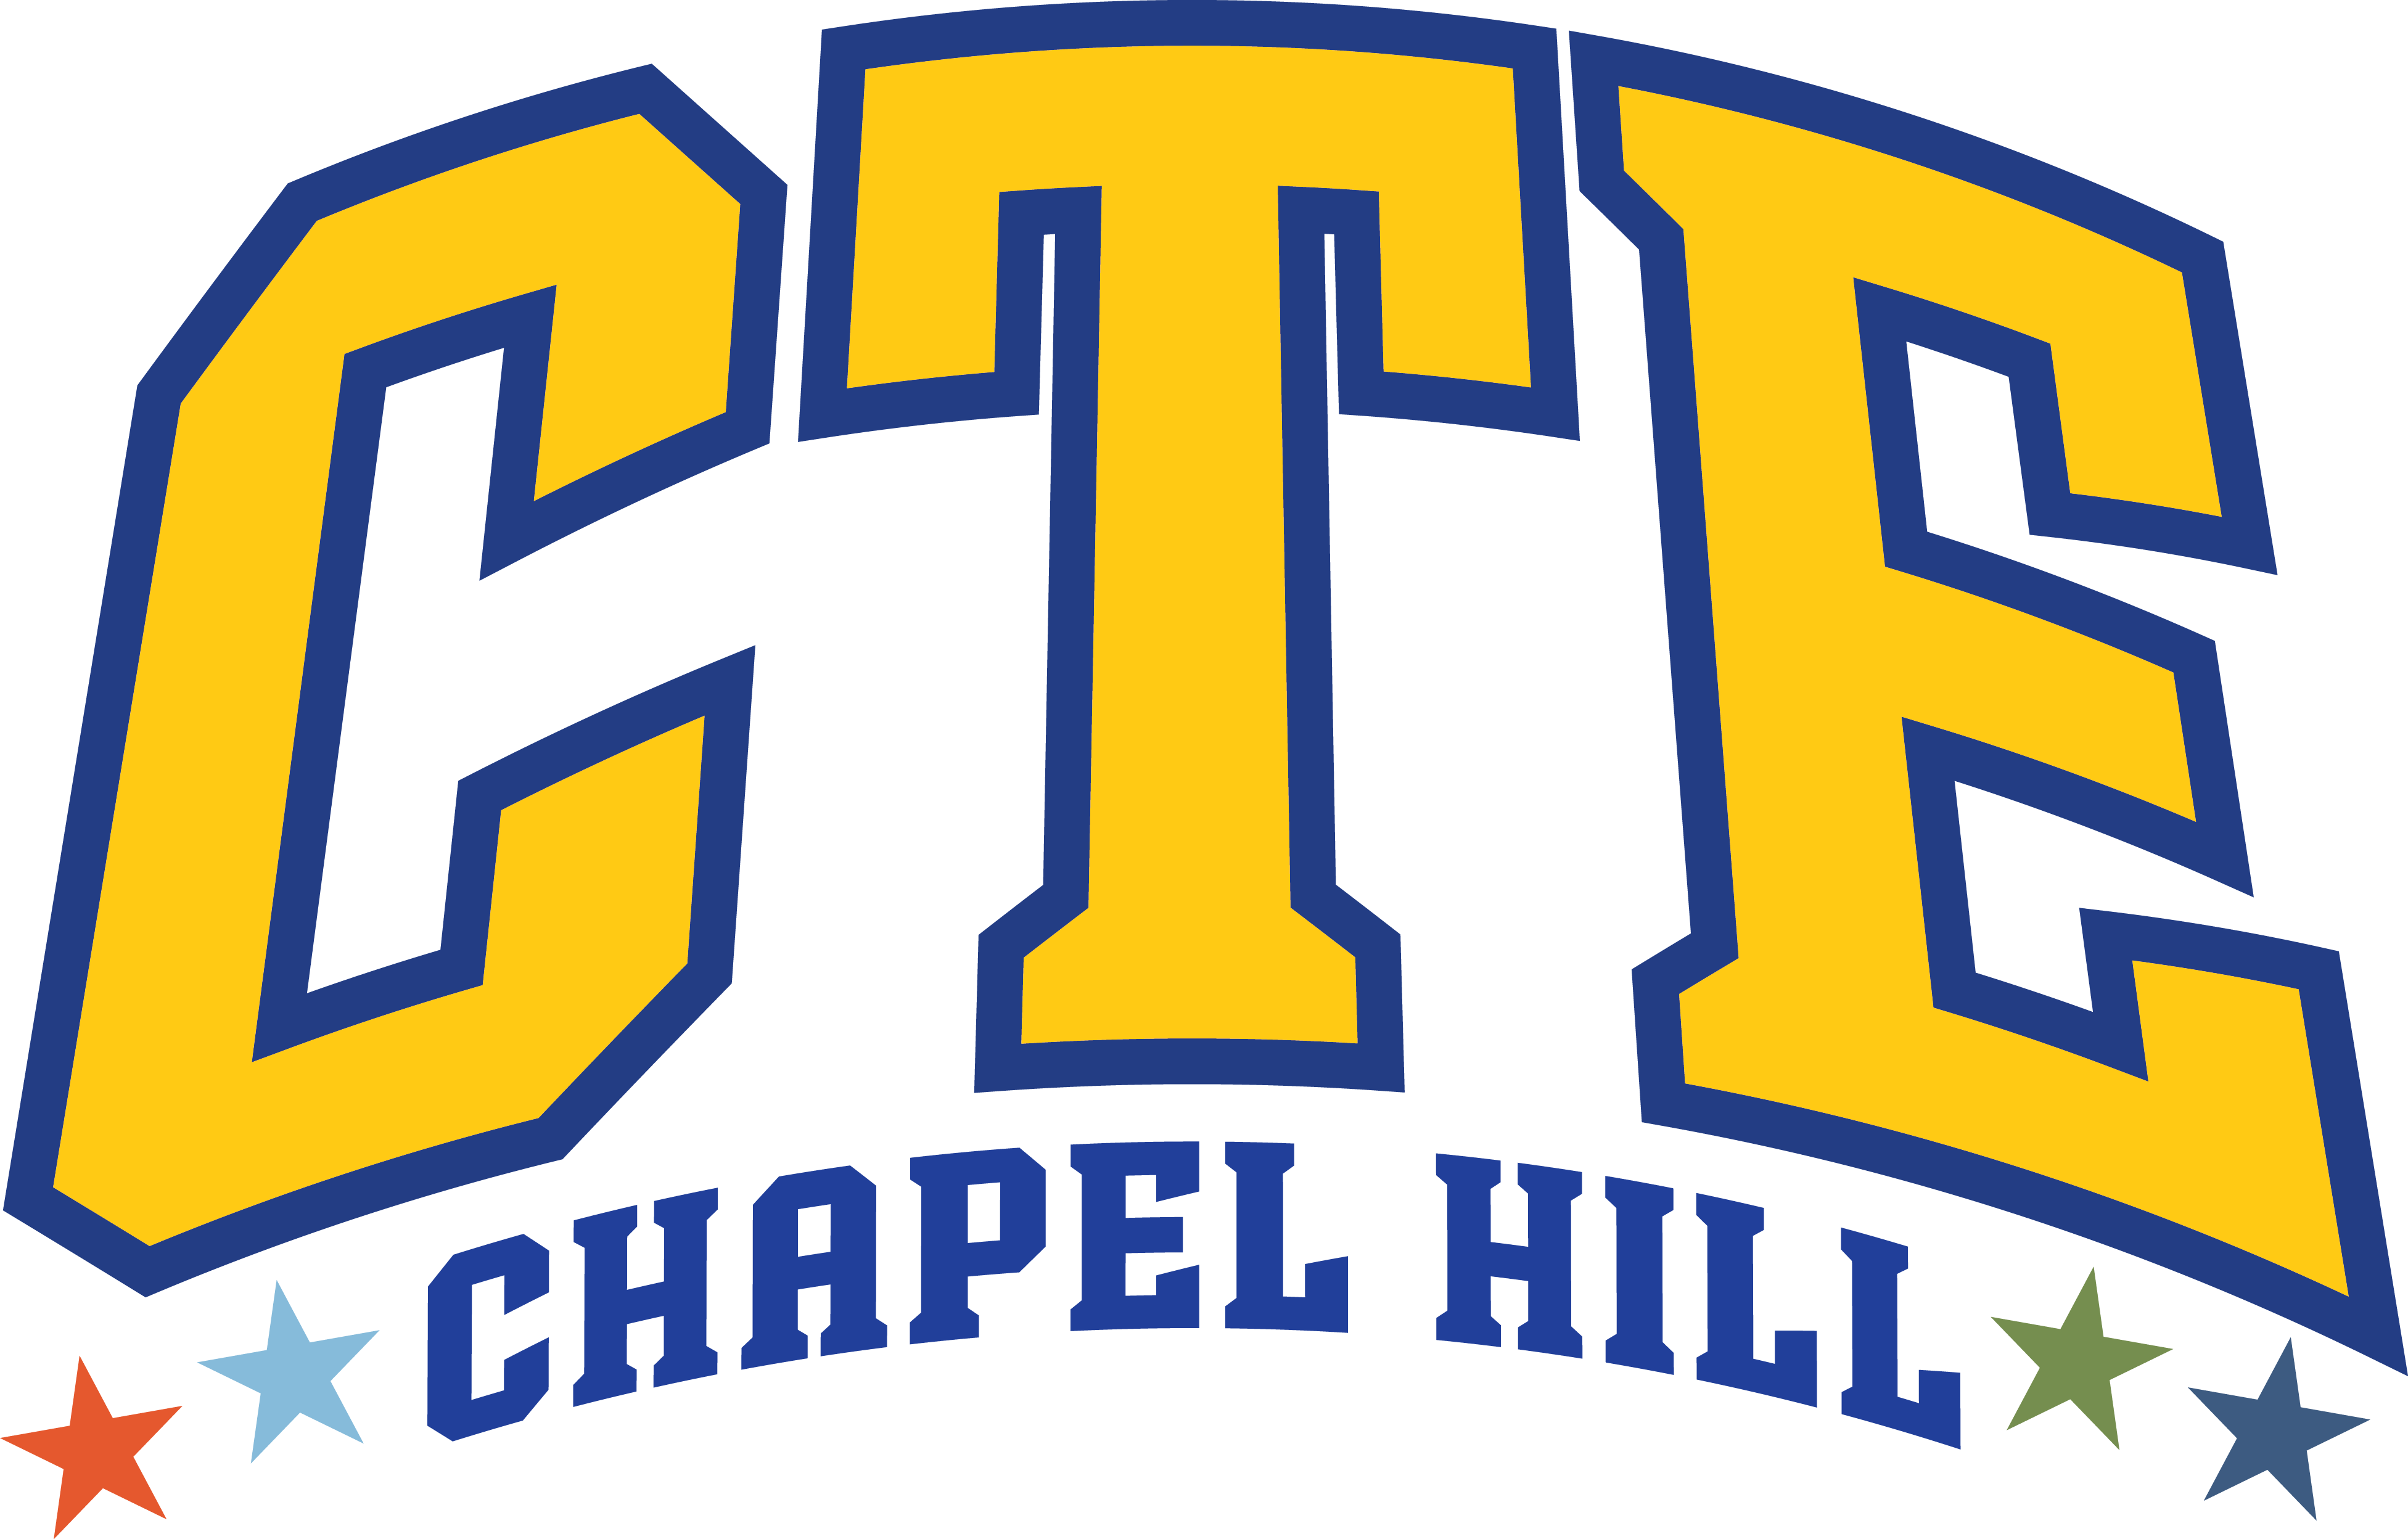 CTE Chapel Hill logo